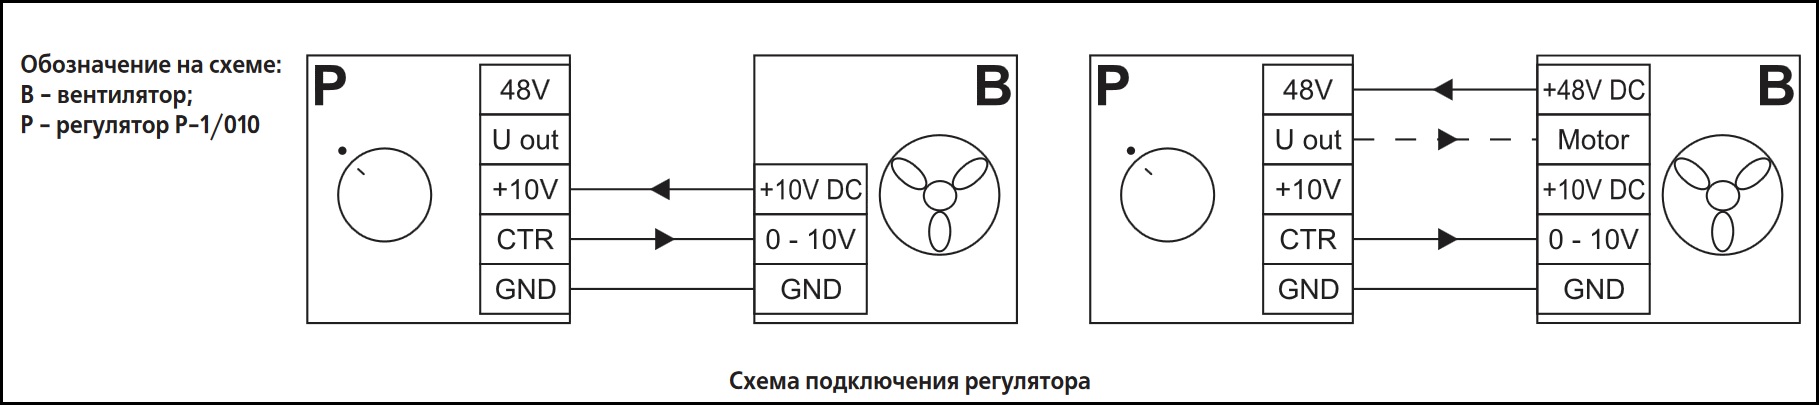 Схема подключения регулятора скорости ВЕНТС Р-1/010